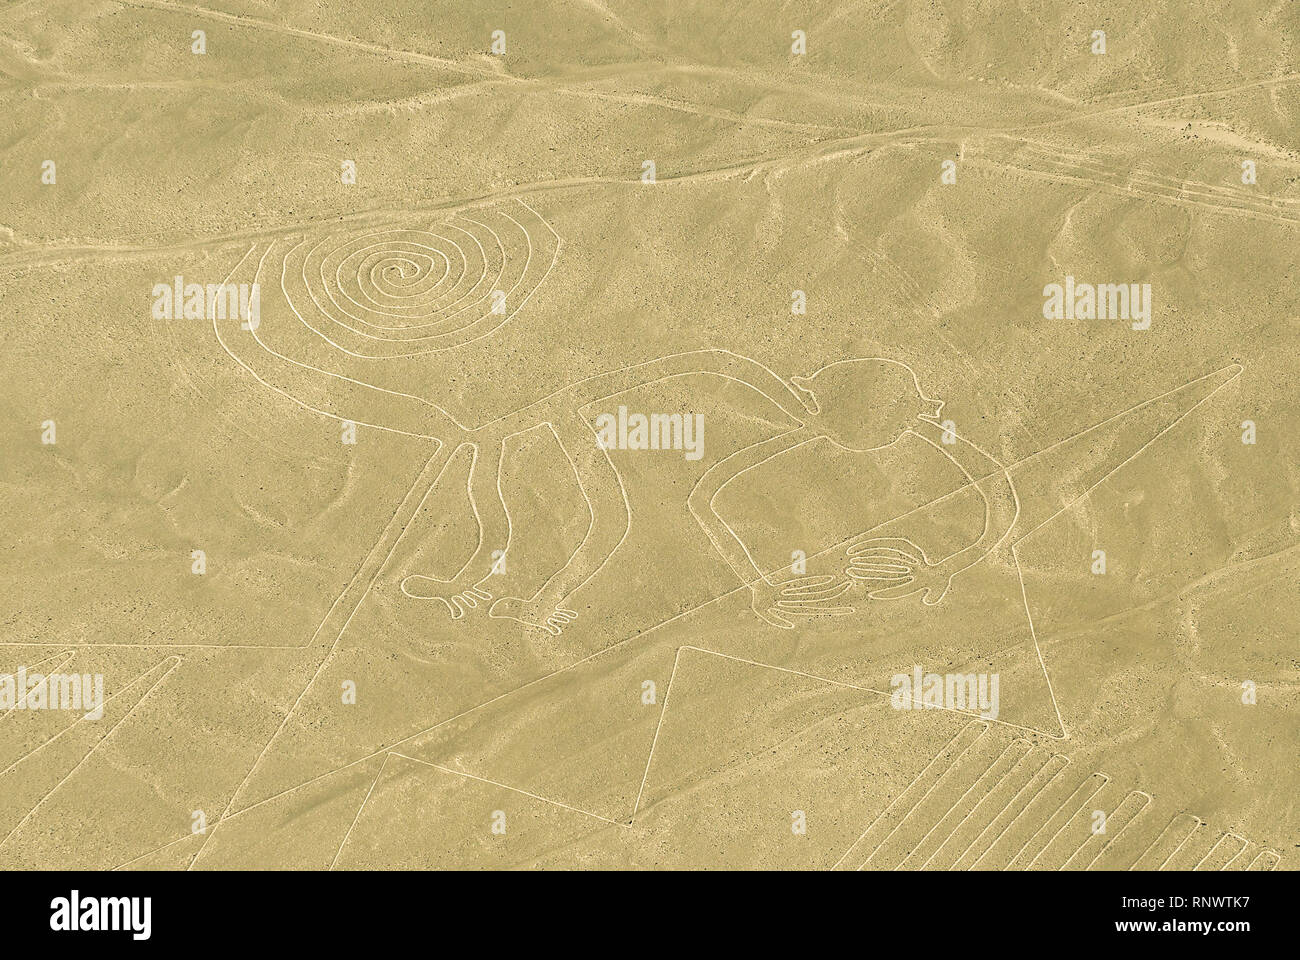 Der Affe Abbildung Zeichnung in der Wüste Sand bekannt als die Nazca Linien in der Nähe der Stadt Nazca, Peru, Südamerika. Stockfoto